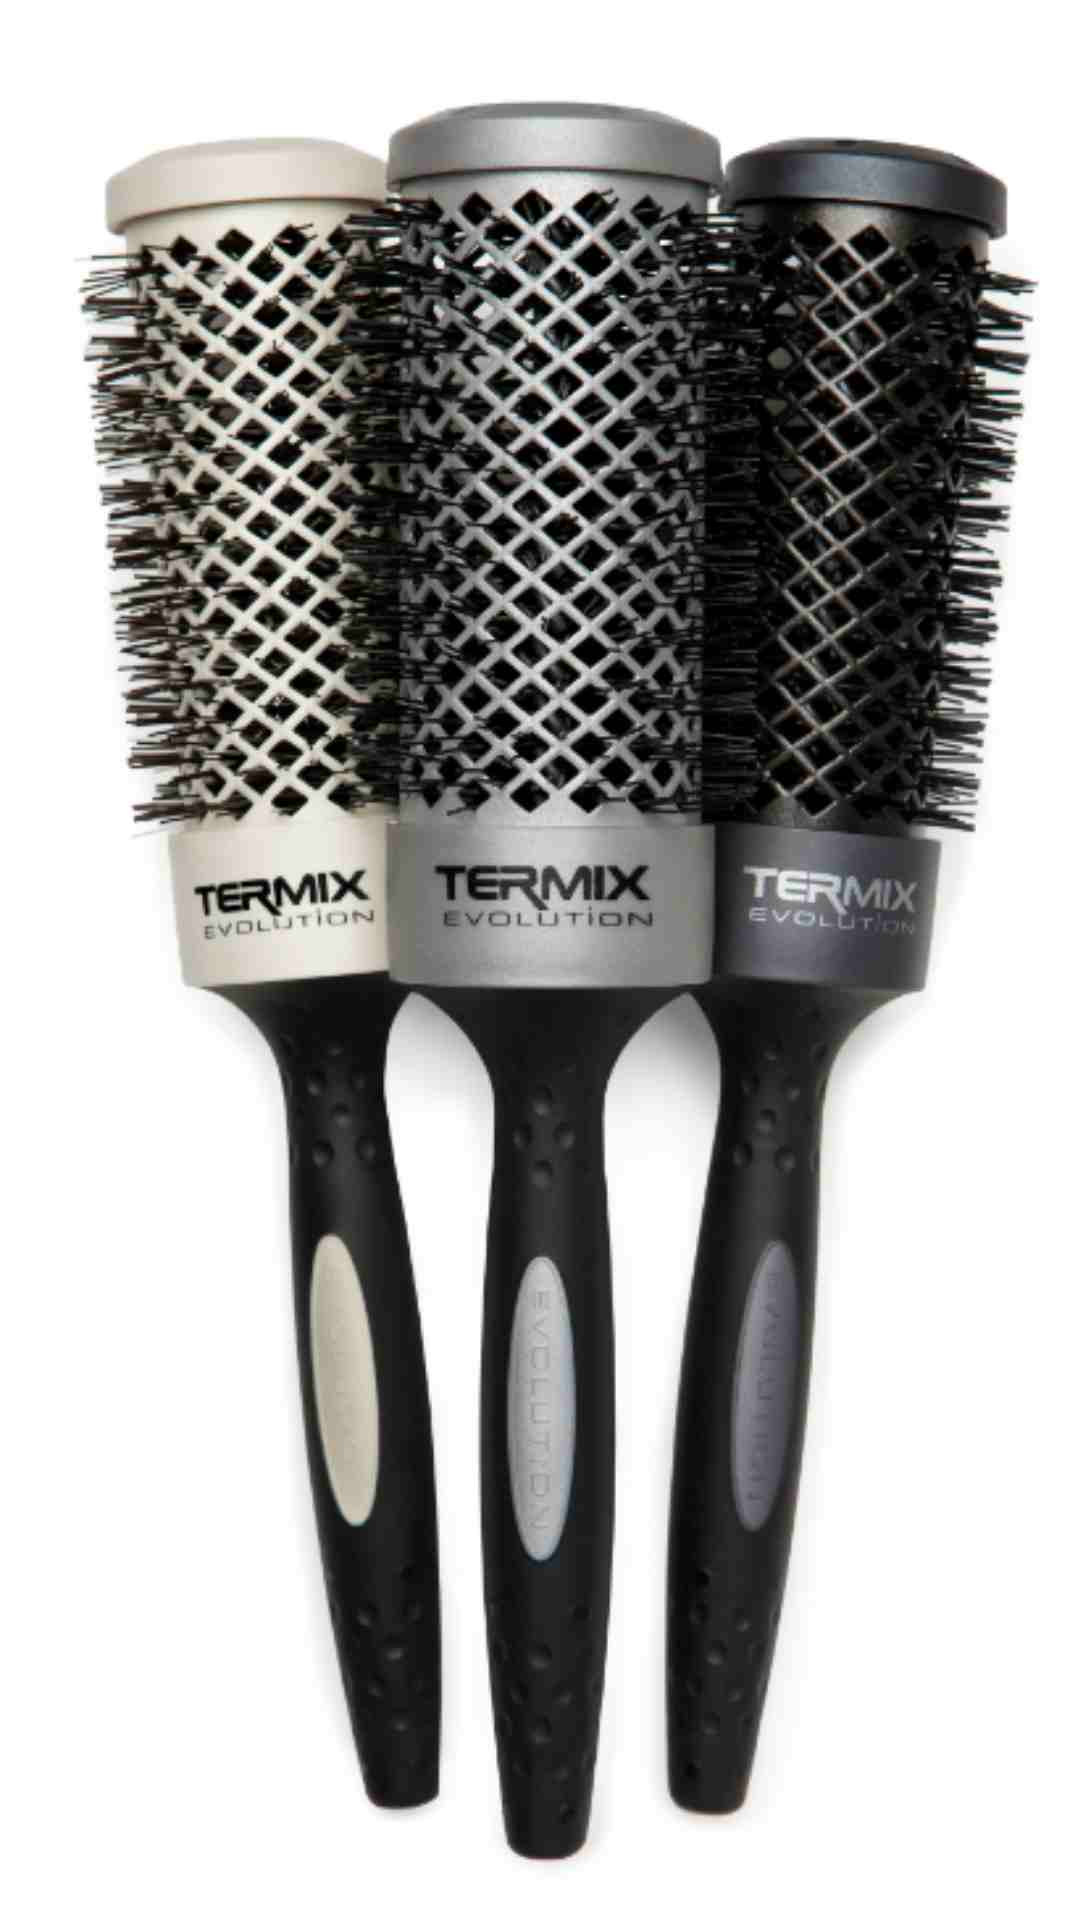 Cepillos de pelo redondos profesionales Termix Evolution para cada tipo de cabello